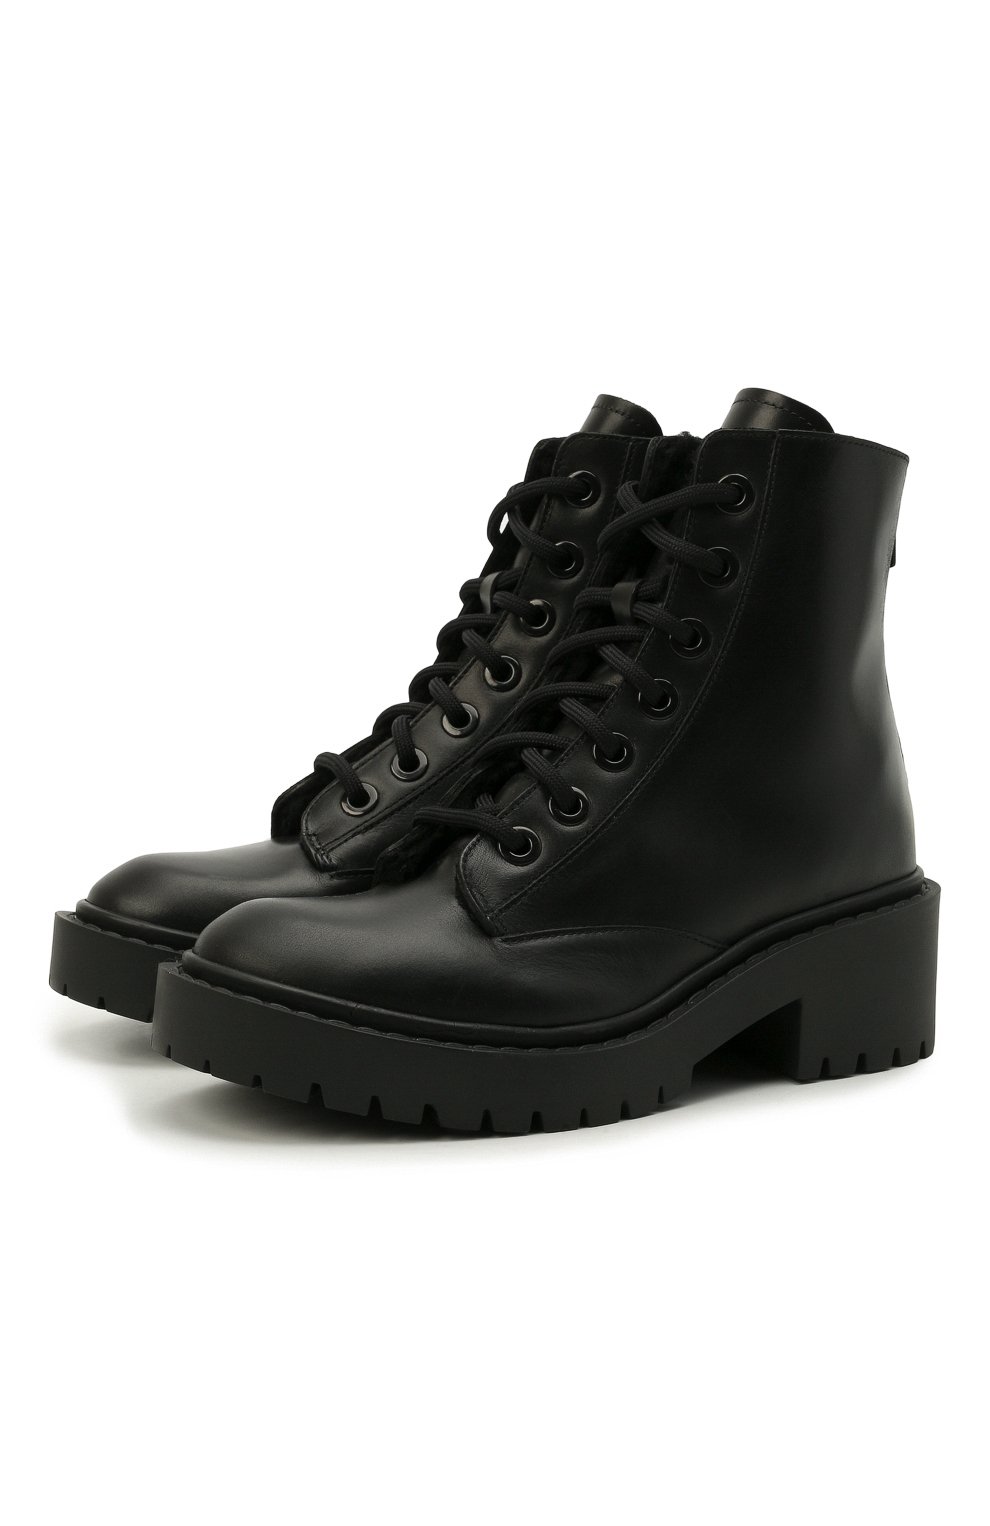 Кожаные ботинки Pike Kenzo FA62BT341L63, цвет чёрный, размер 37